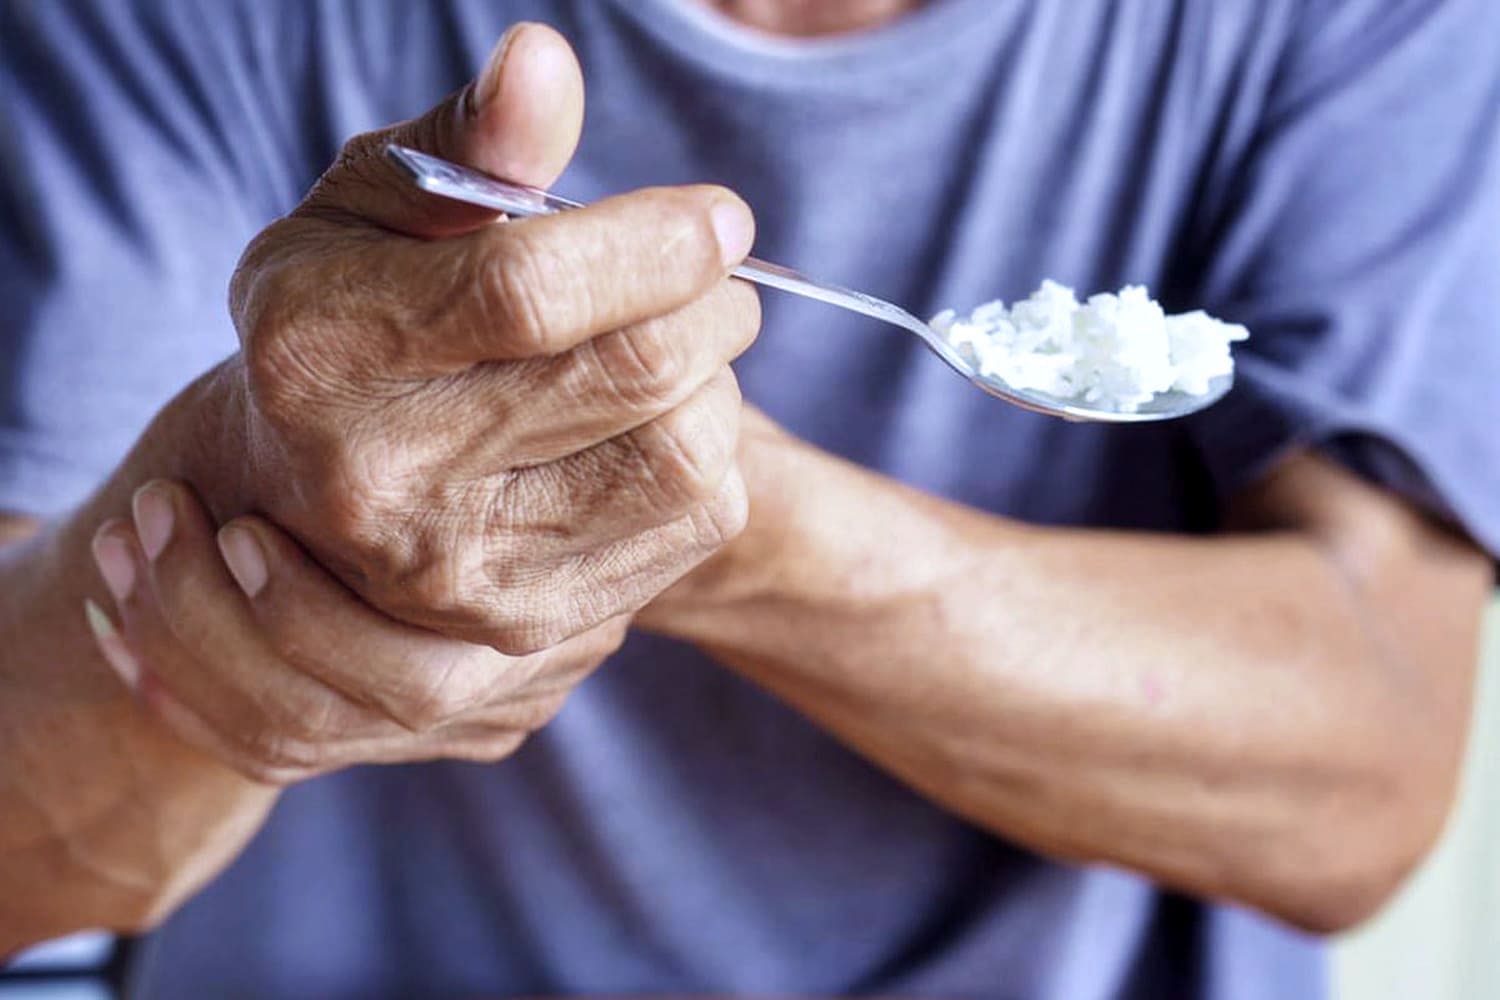 Pessoa tenta estabilizar a mão para se alimentar, com tremores da doença de Parkinson, segurando o próprio punho, enquanto leva colher à boca. Estima-se que o Parkinson afeta 10 milhões pessoas.